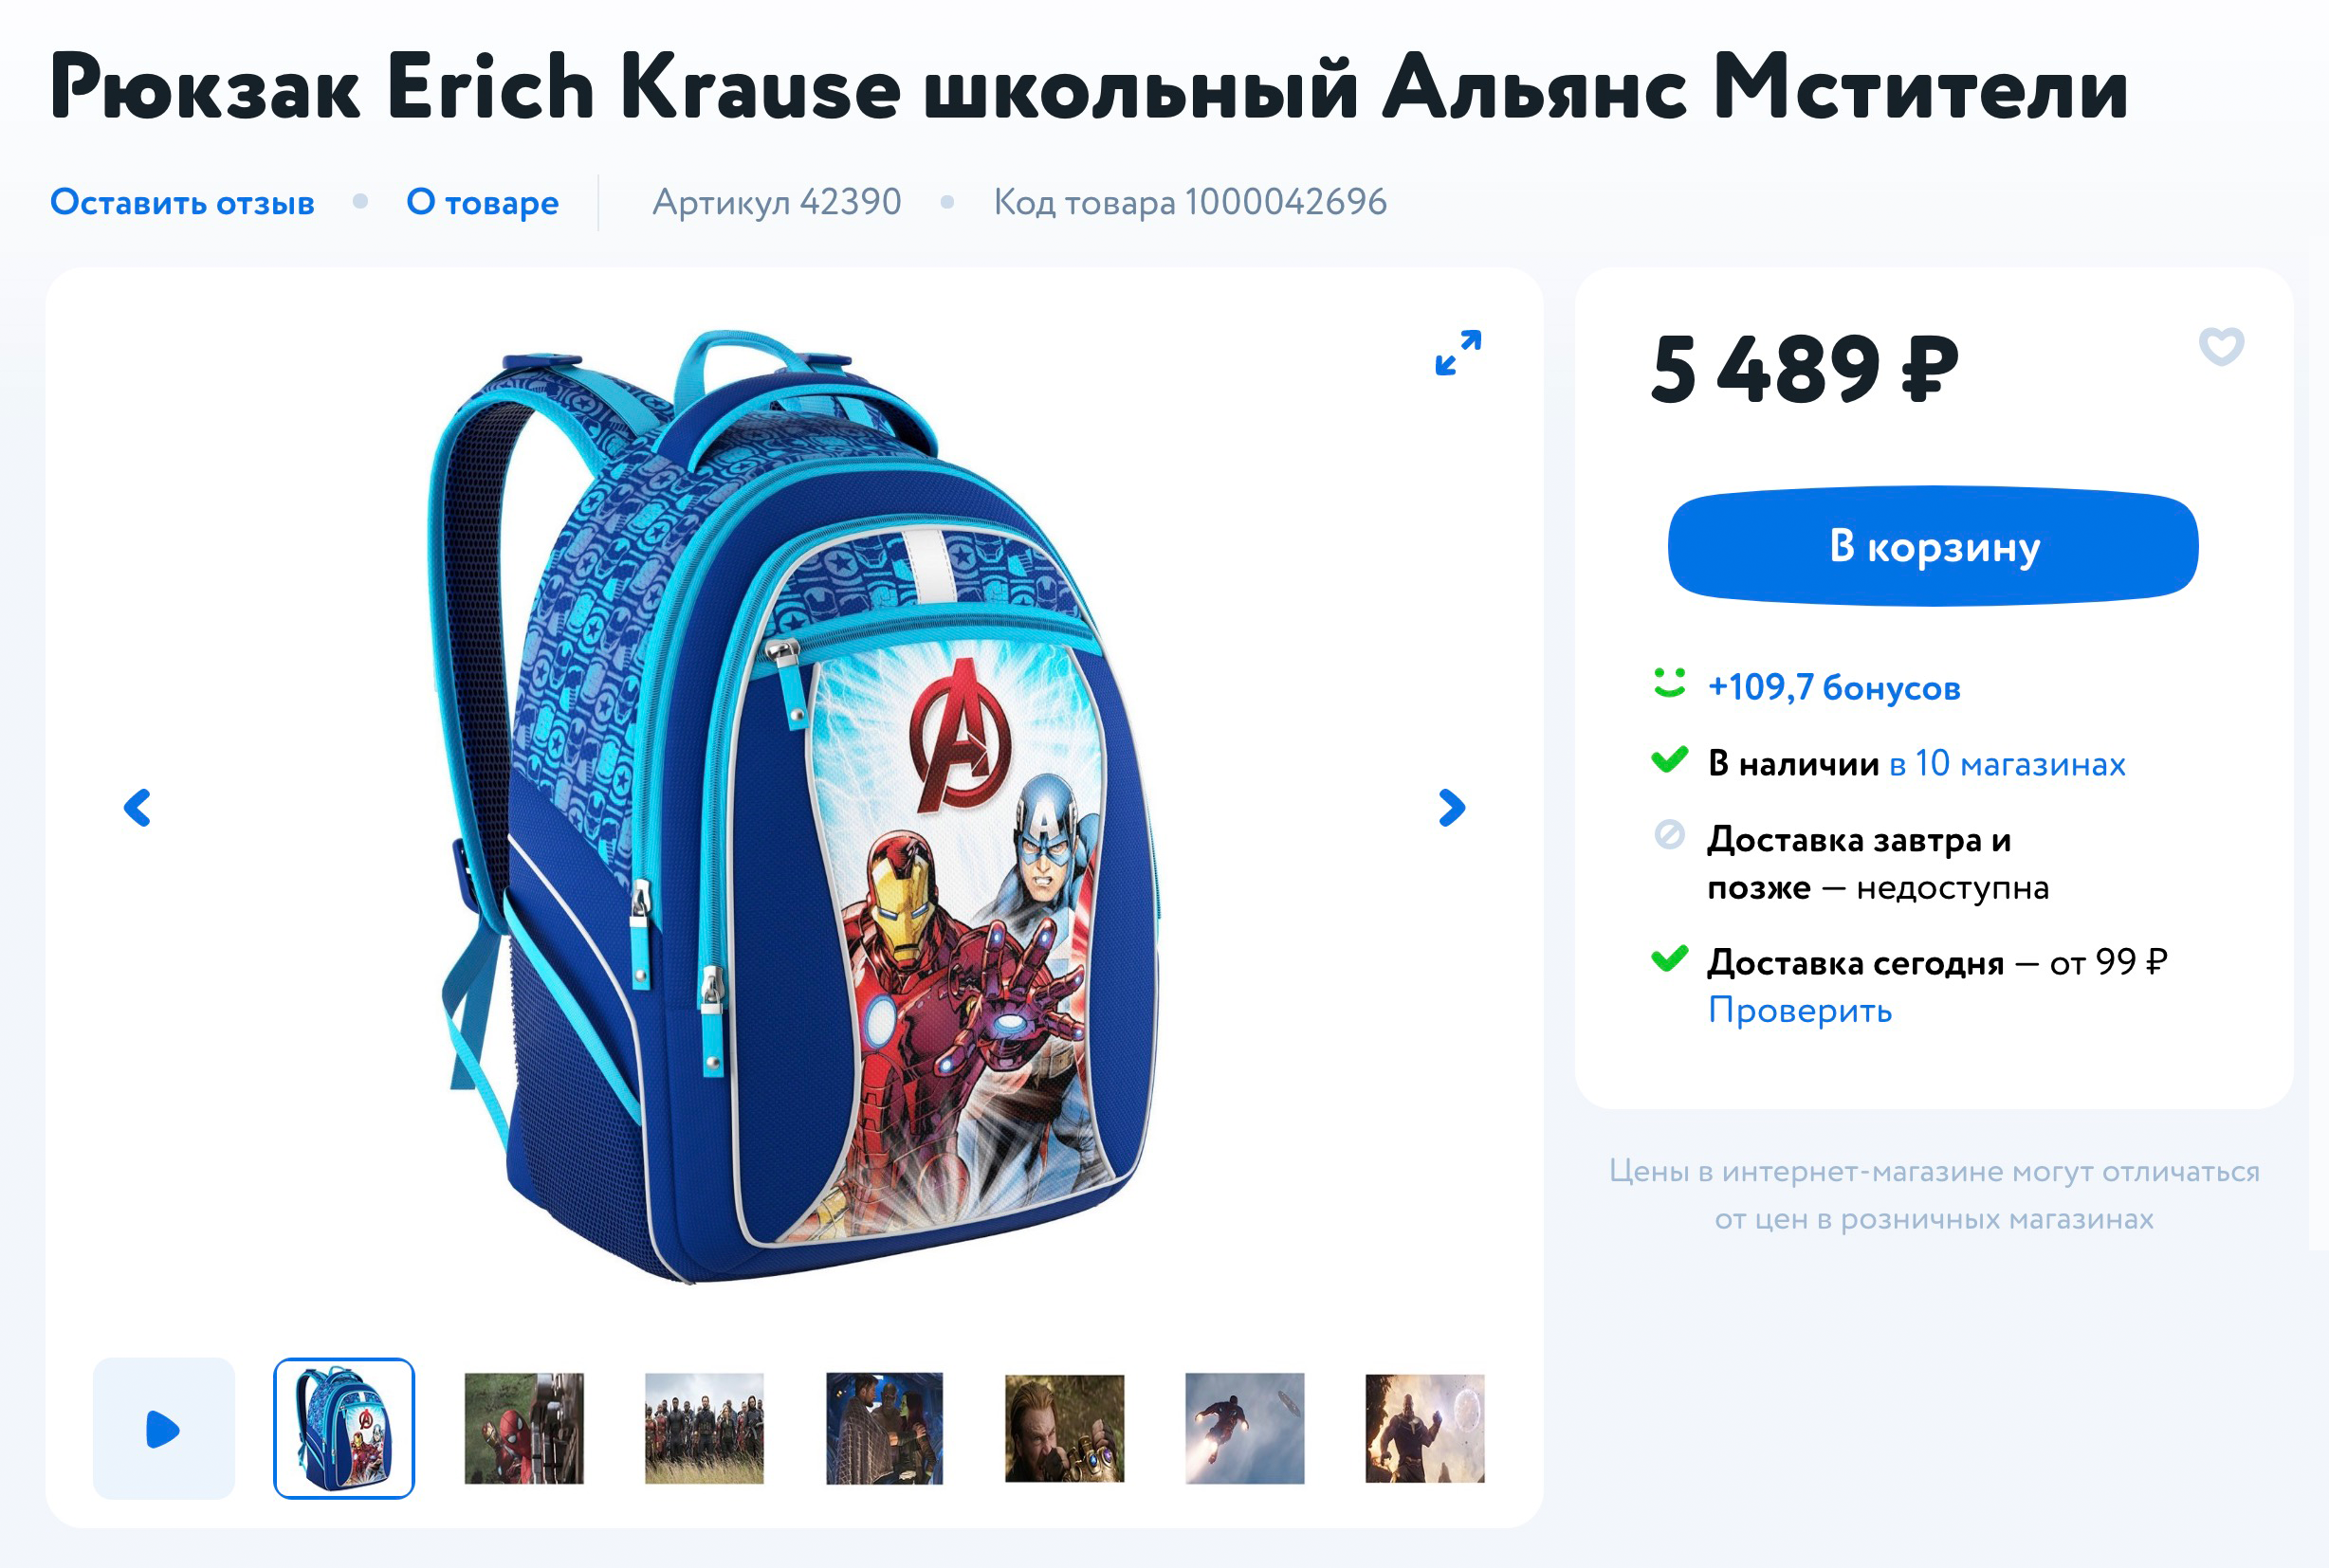 Рюкзак с изображением Мстителей на сайте «Детского мира» стоит 5489 ₽. Скидок на рюкзаки с модными героями не было